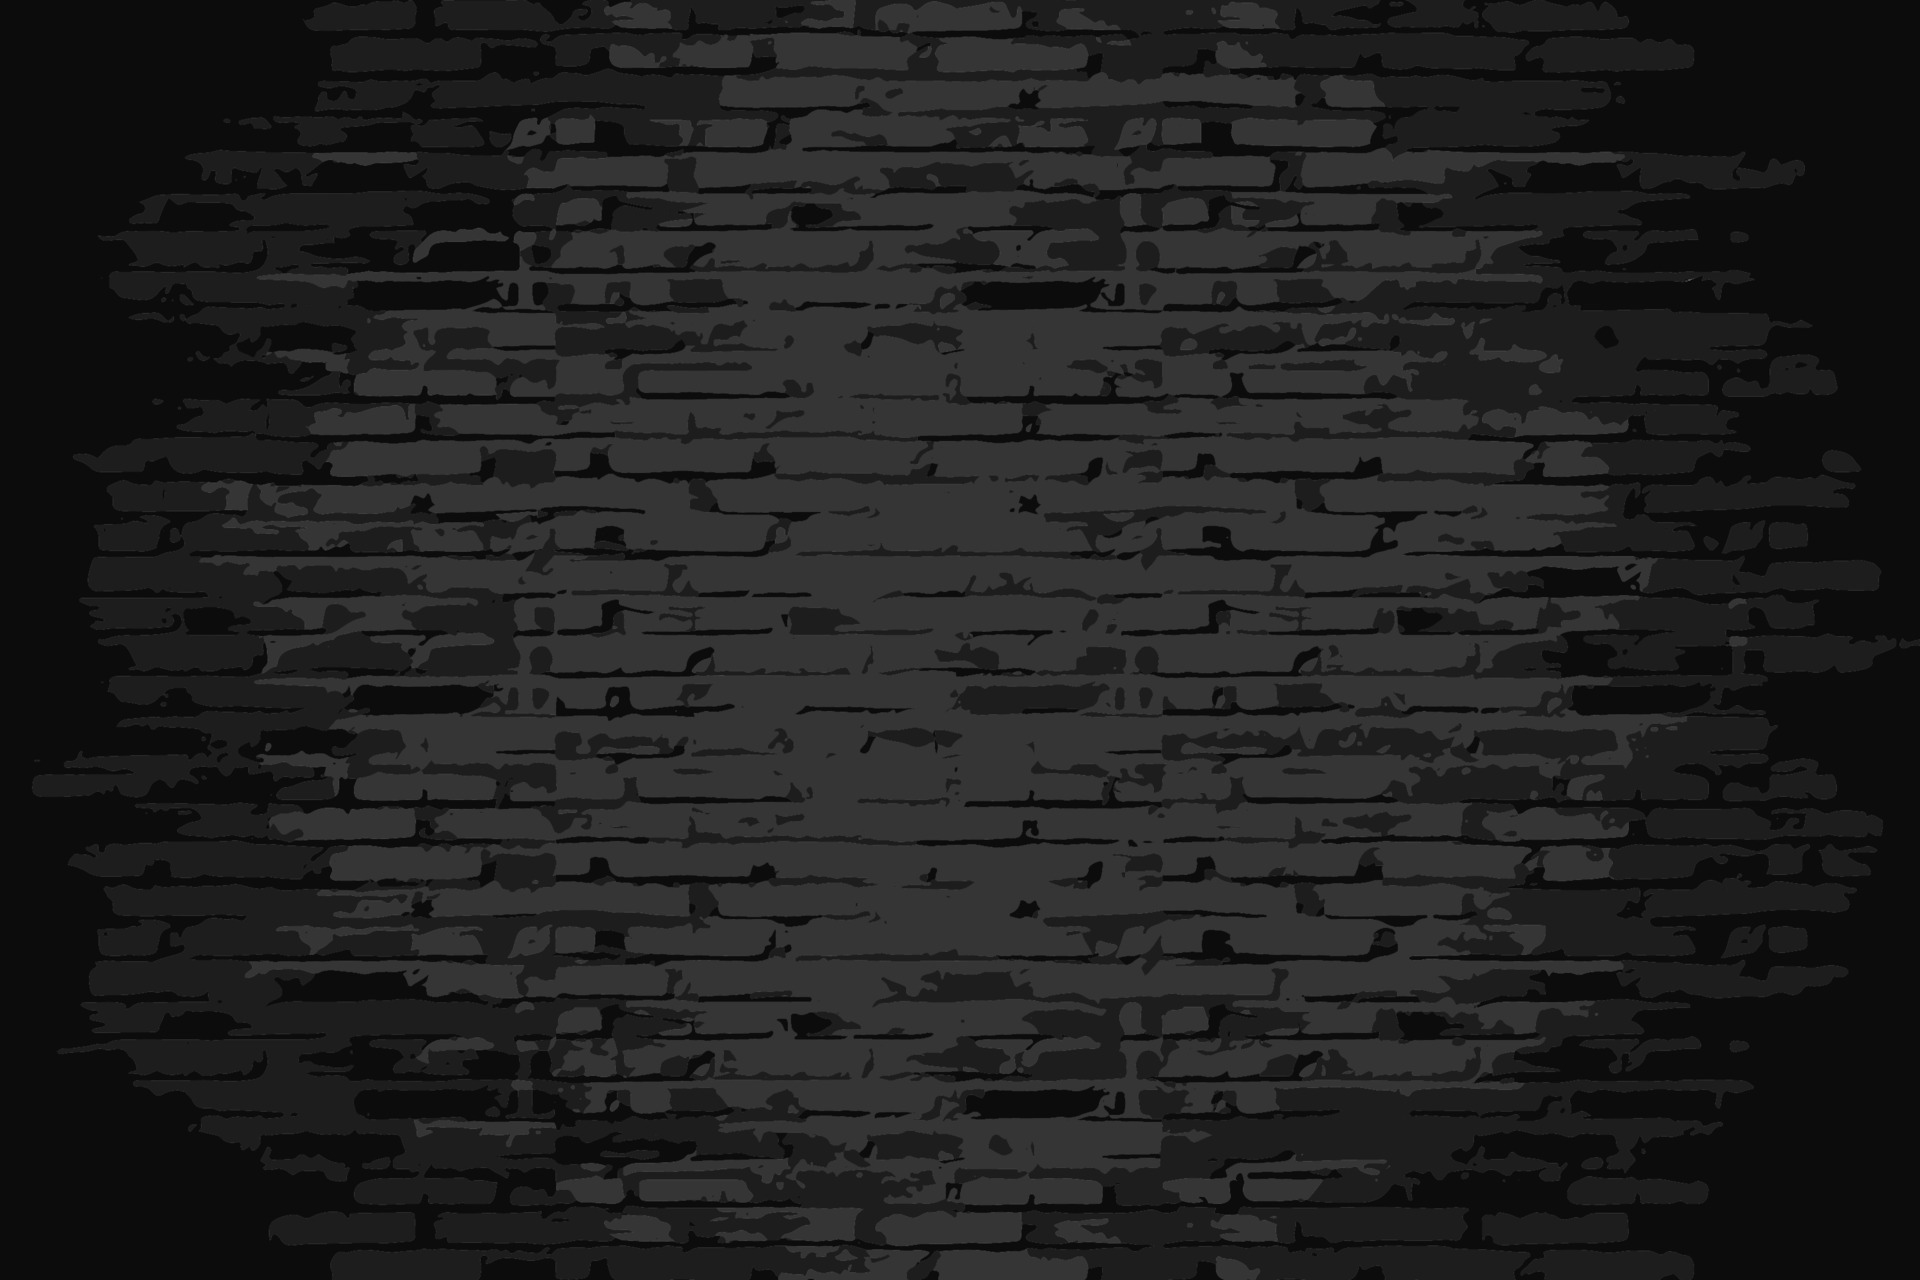 Brick Black Wall Texture Background. Dark Brickwork Pattern. Block